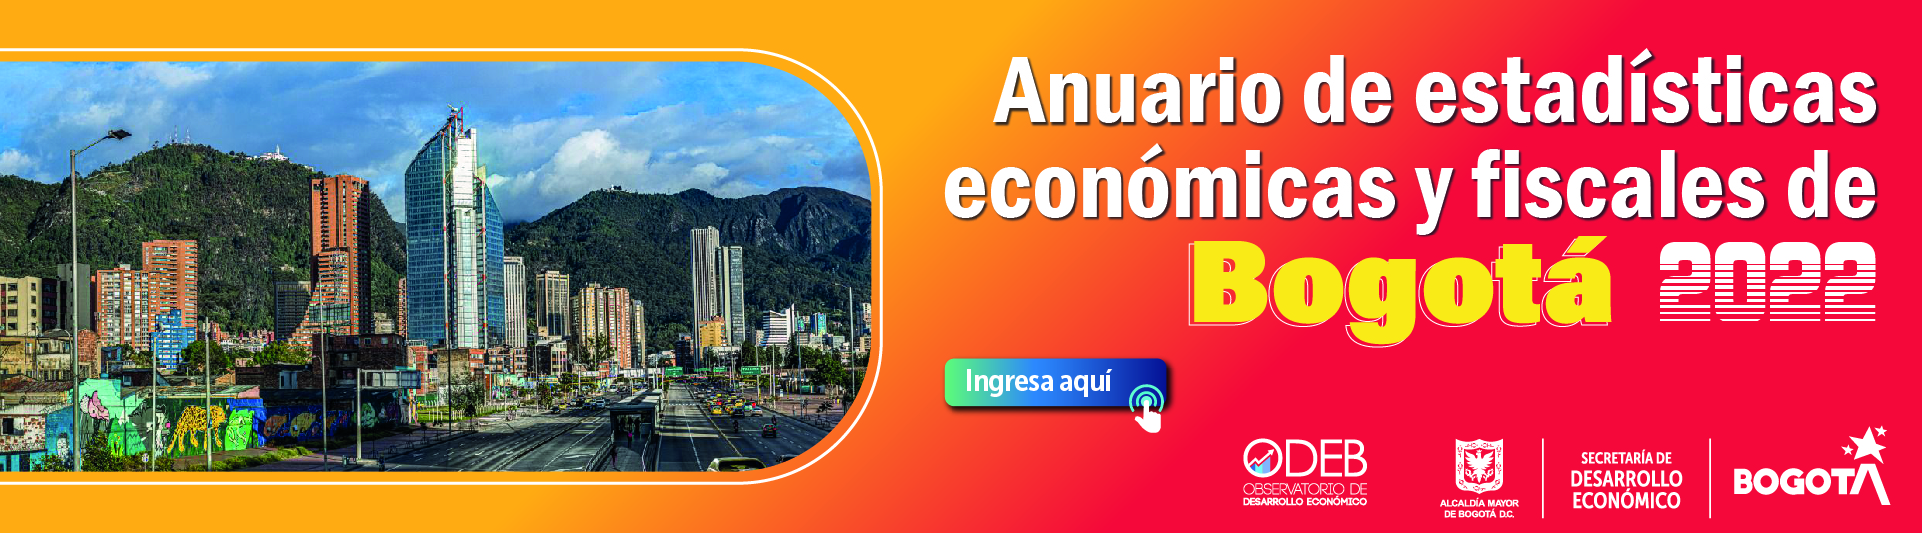 Anuario de estadísticas económicas y fiscales de Bogotá 2022